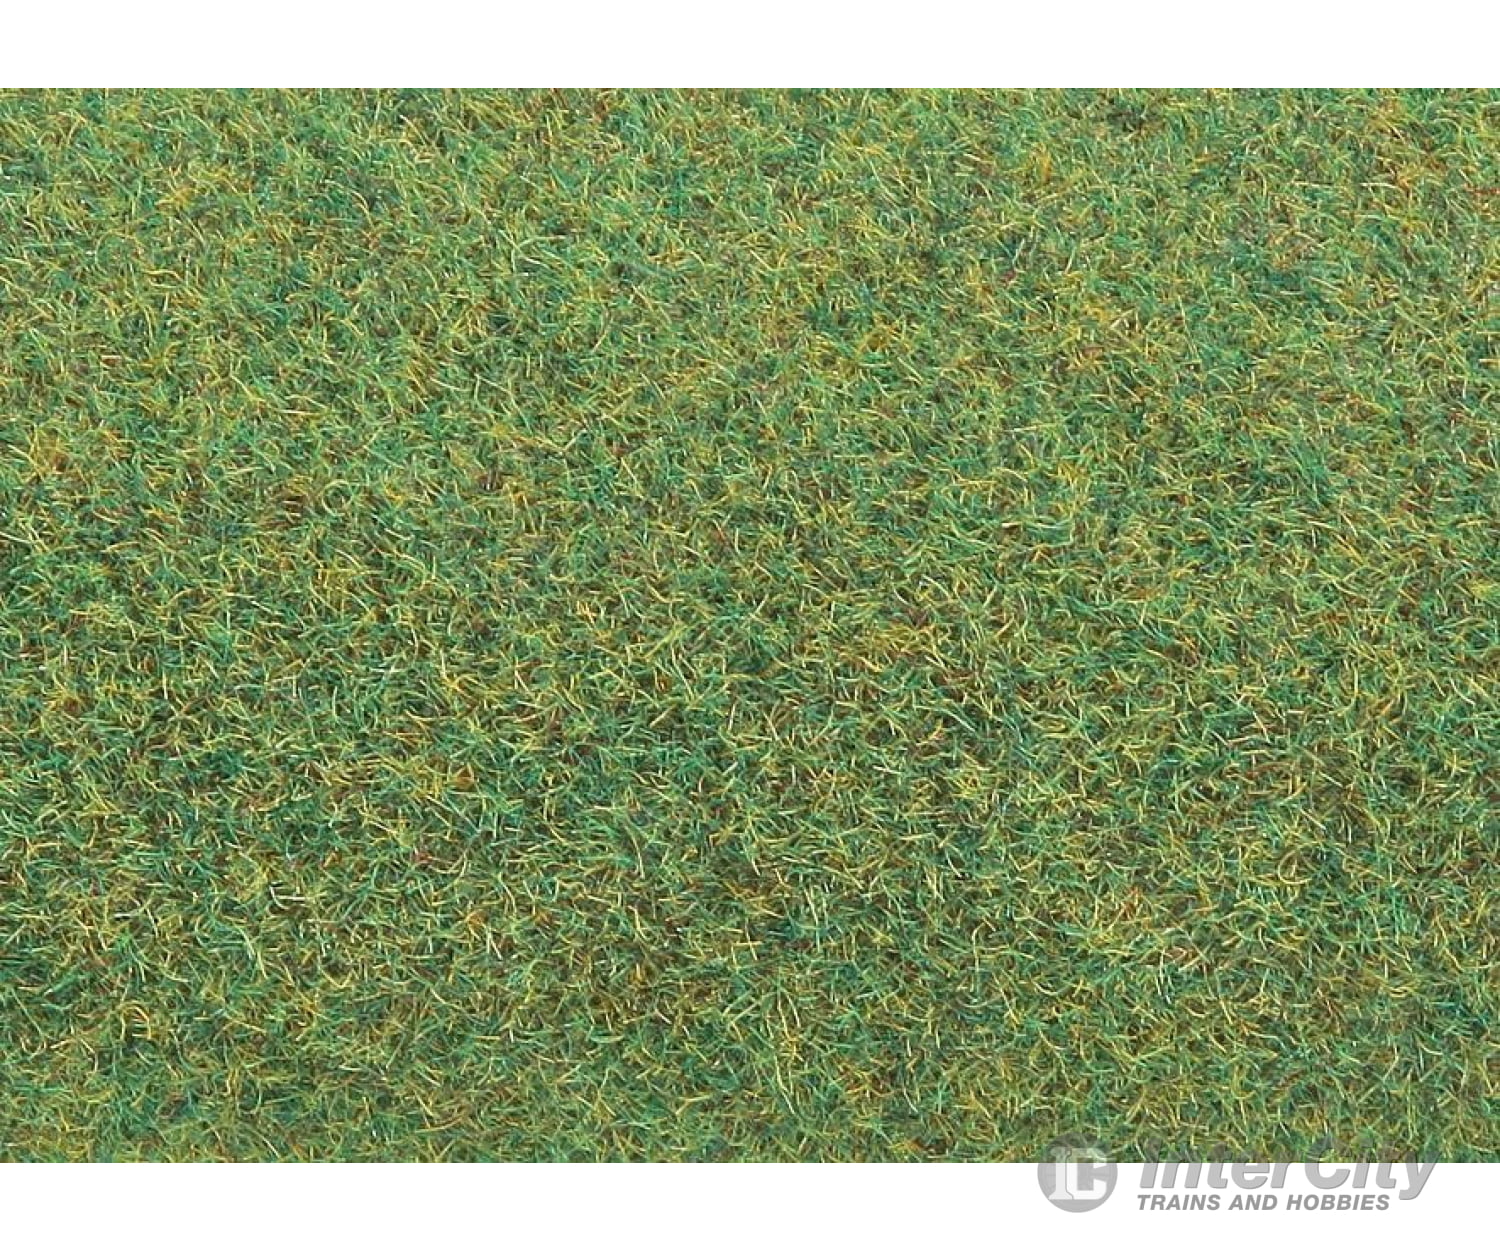 Faller 180758 Ho Tt N Z Ground Mat Dark Green Grass & Scenery Mats